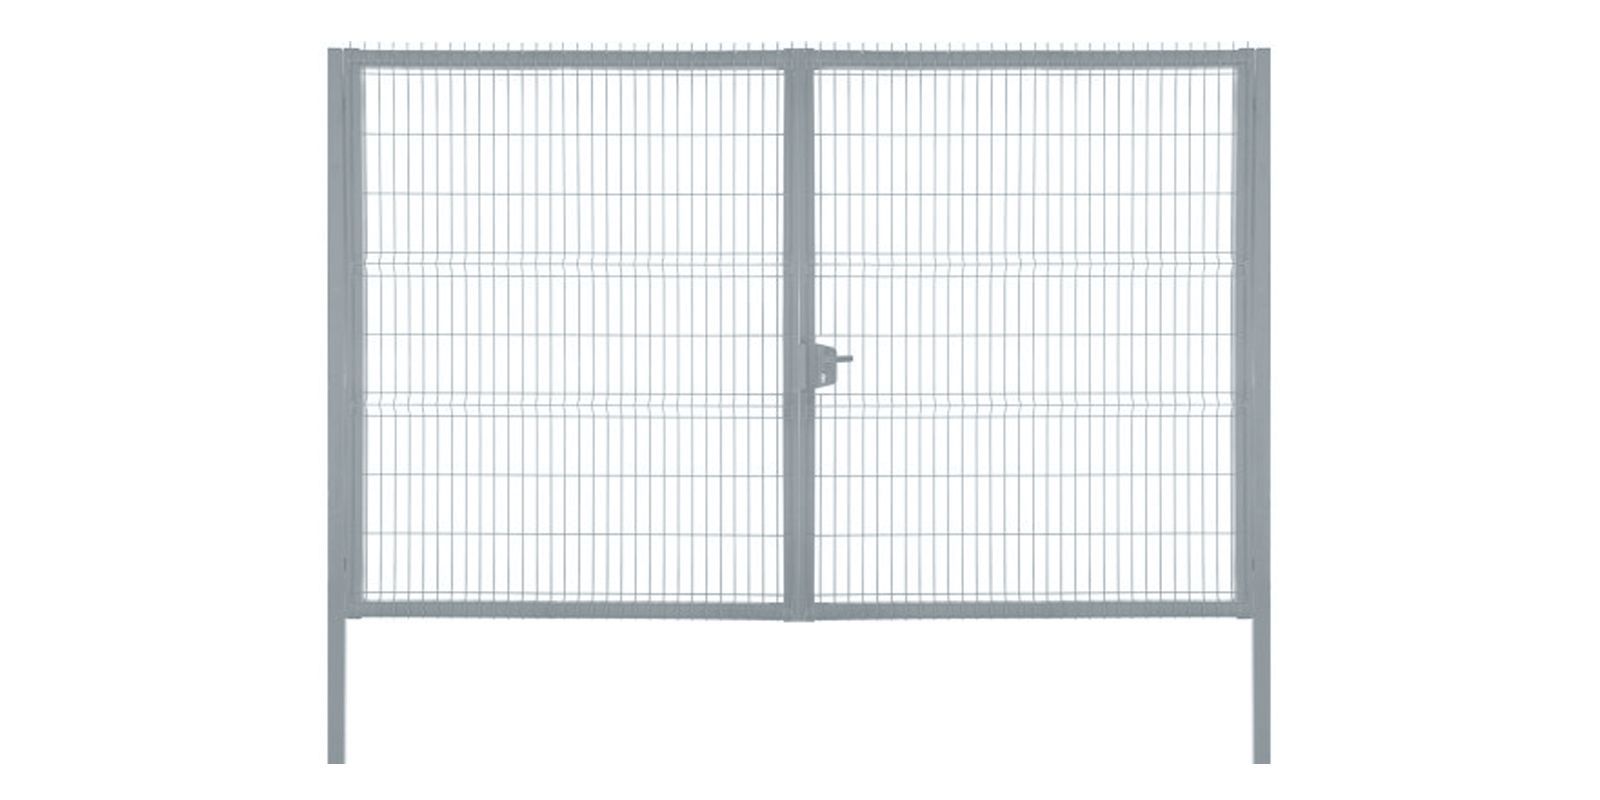 Купить Ворота для панельного ограждения Profi шириной 4,00 м с высотой сетки 2,03 м в цвете RAL 7040